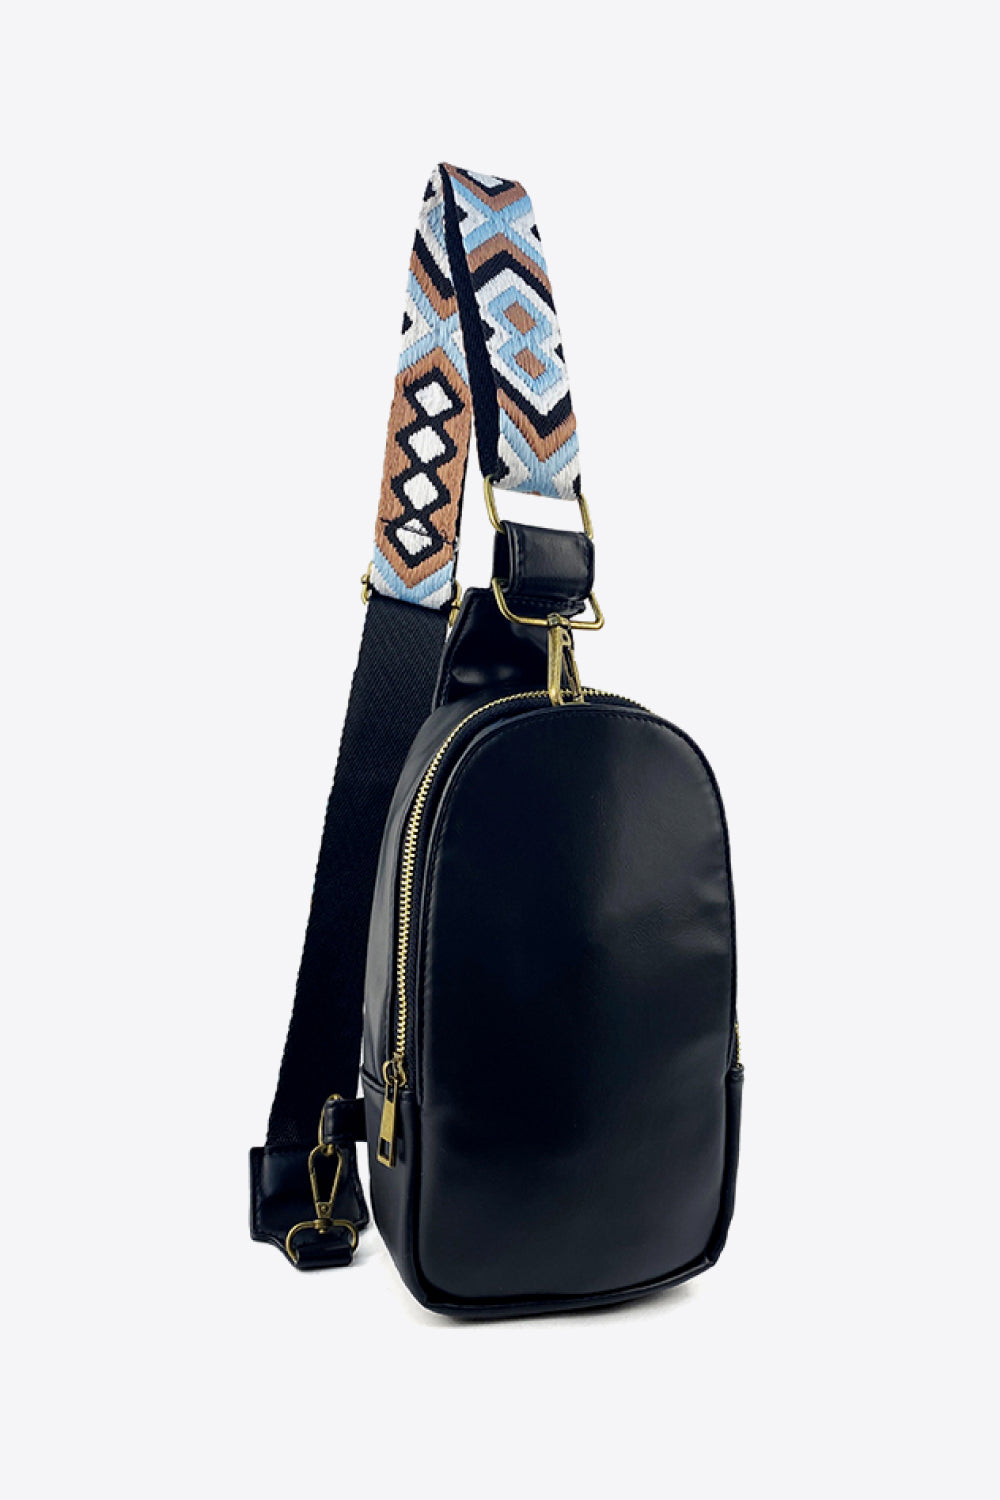 Guitar Adjustable Strap Leather Sling Bag